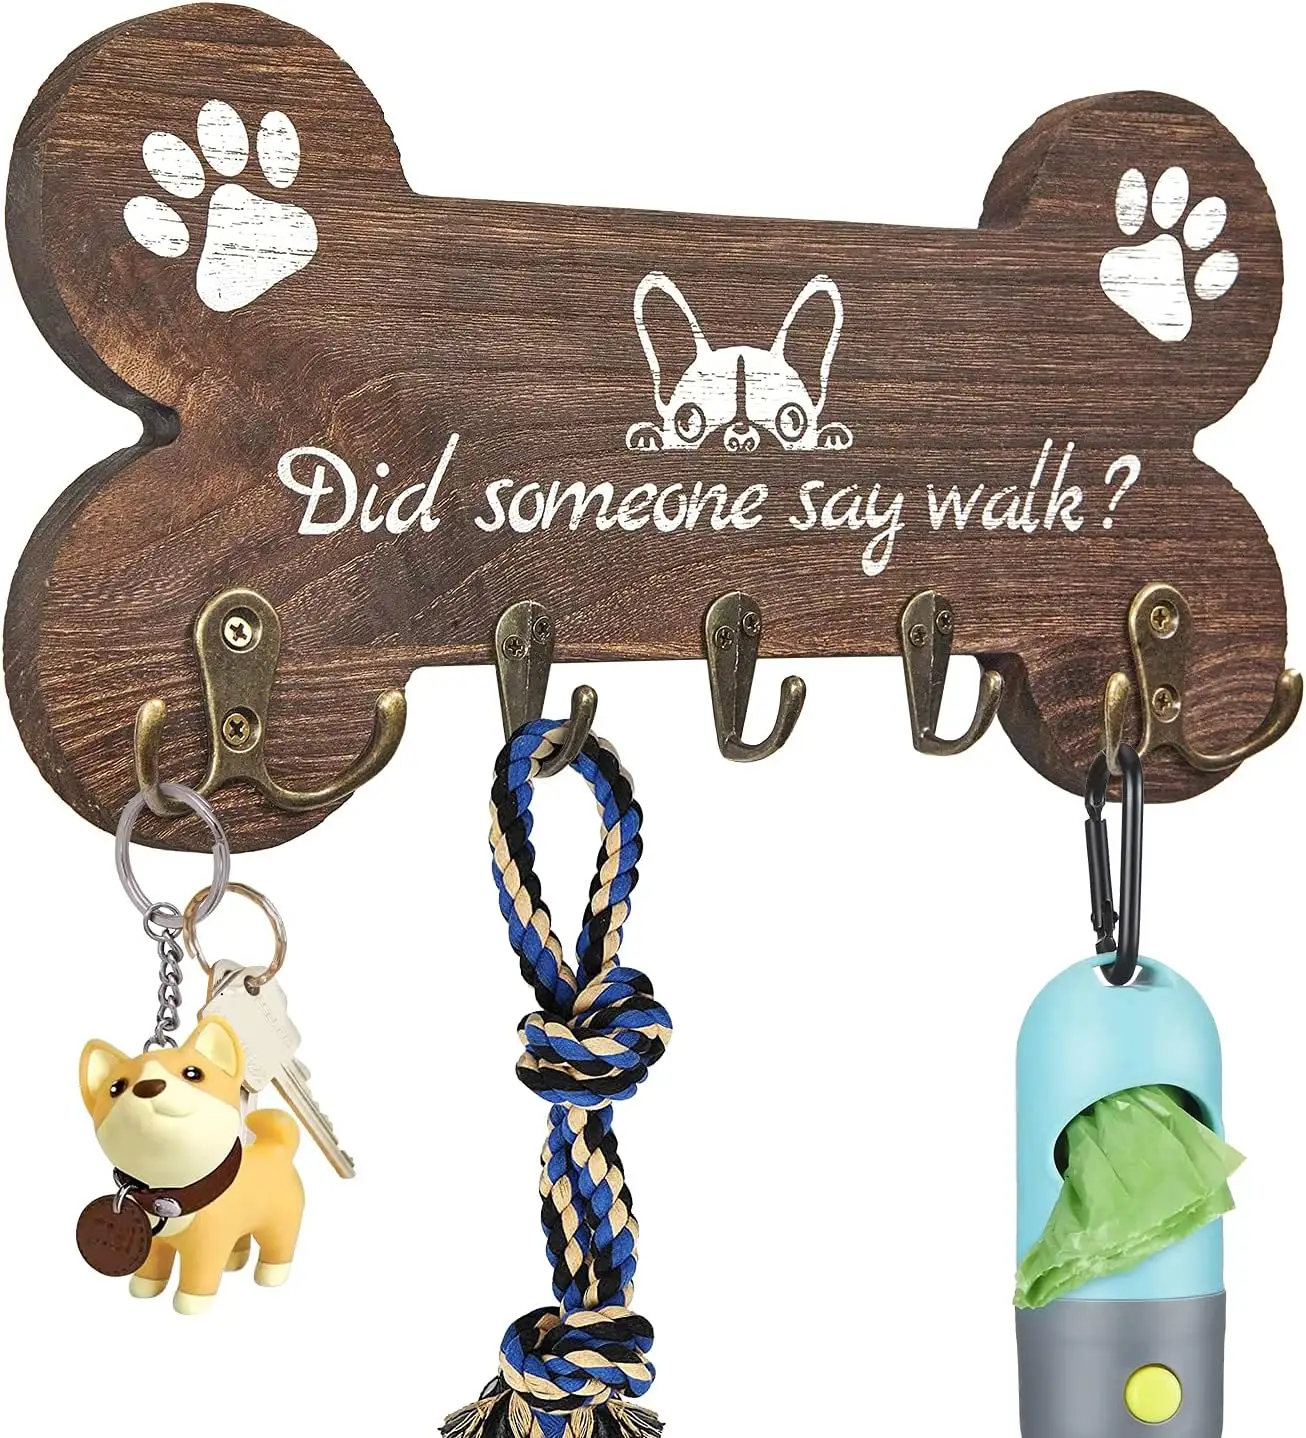 Portachiavi a forma di osso portachiavi per cani con 5 ganci per chiavi decorativi per la parete simpatici regali per l'inaugurazione della casa per il proprietario e gli amanti del cane